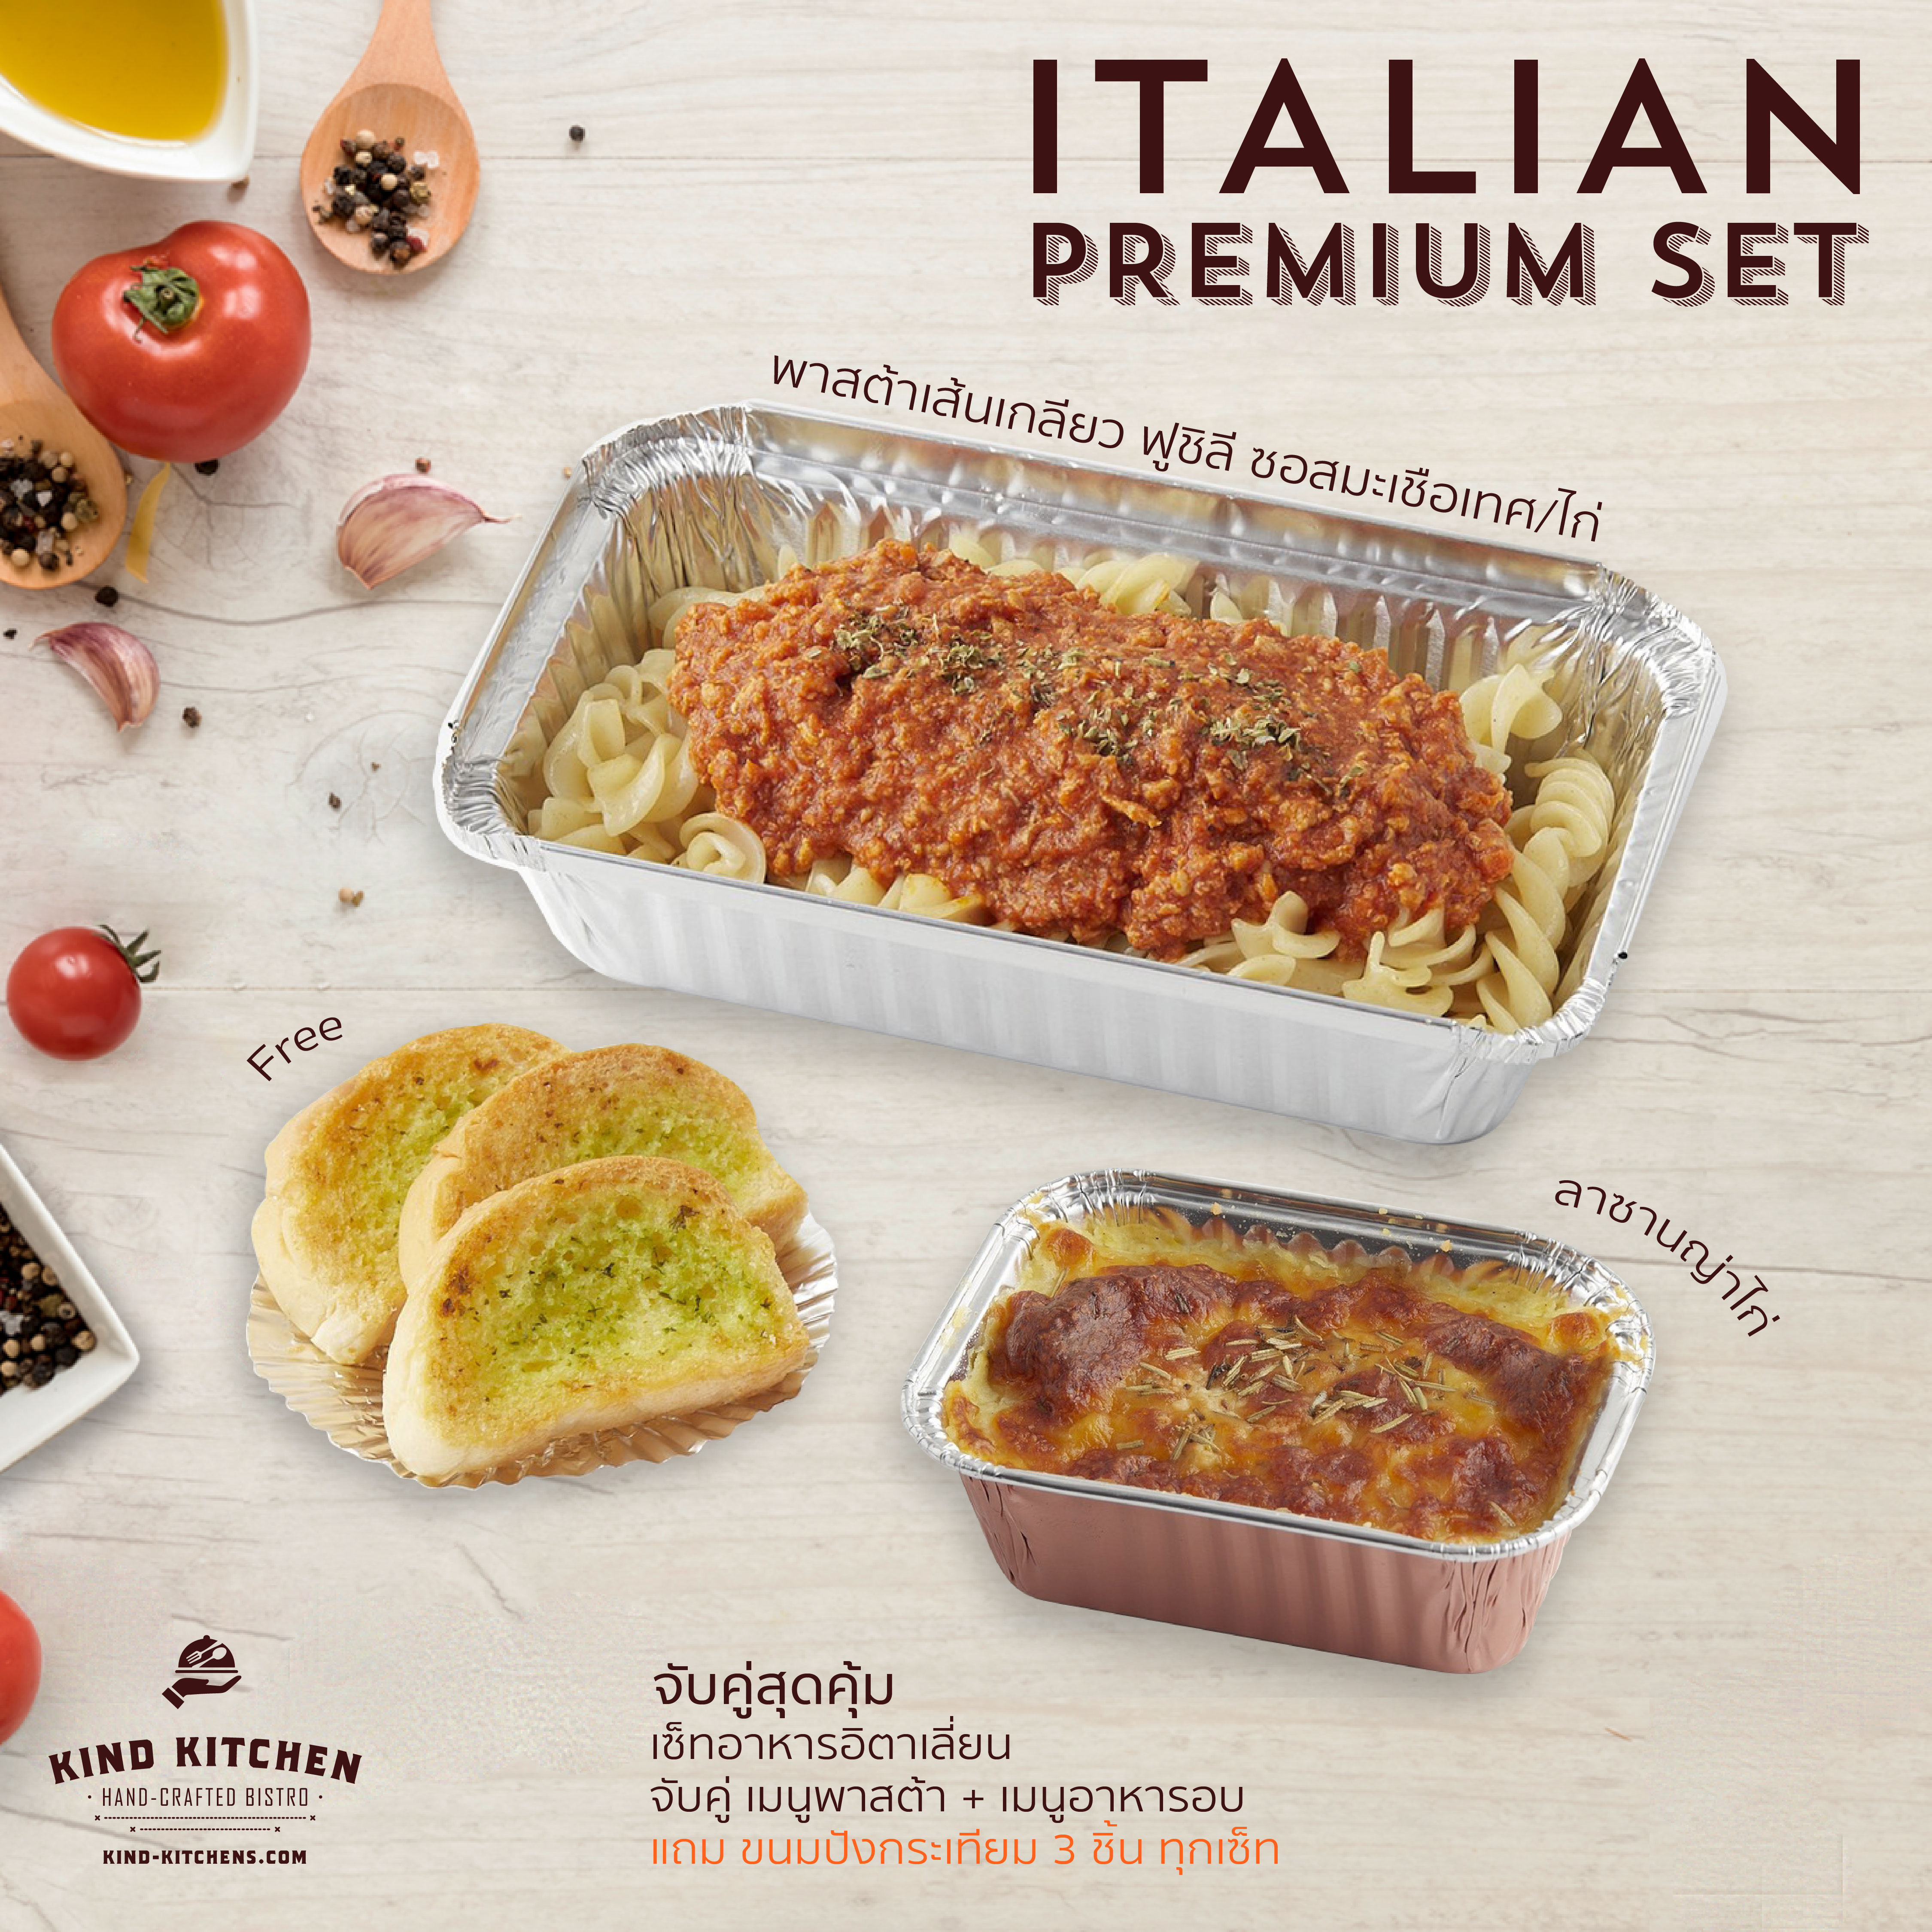 เซ็ทอาหารอิตาเลี่ยน Italian Premium Set_พาสต้าเส้นเกลียว ฟูชิลี ซอสมะเขือเทศ/ไก่ + ลาซานญ่าไก่